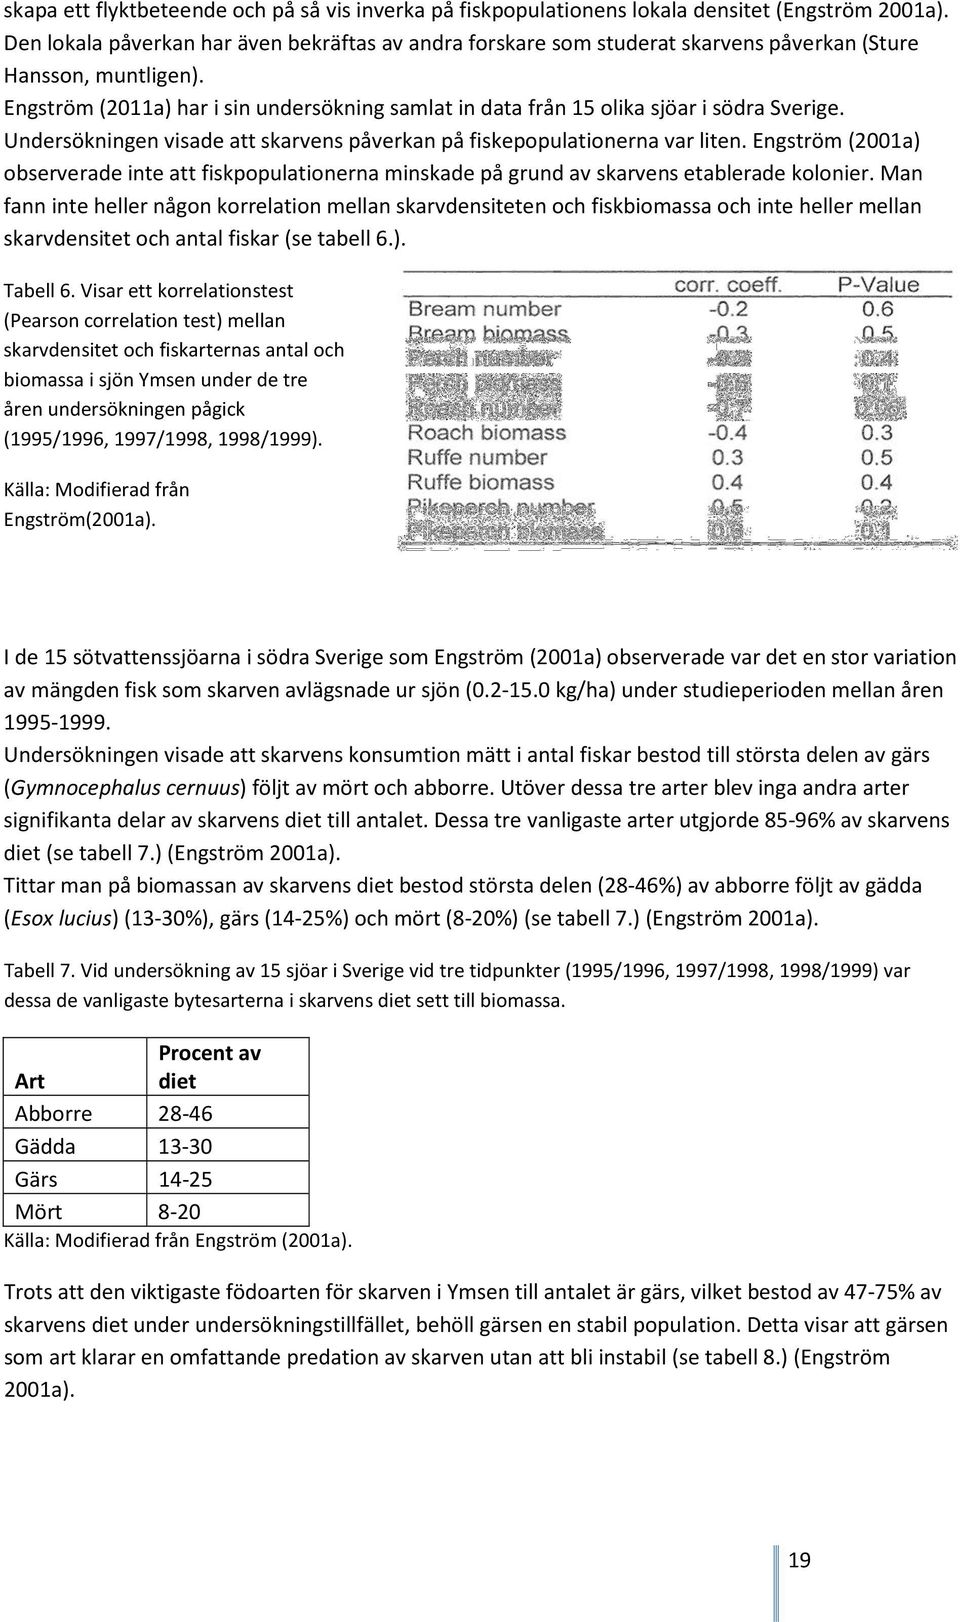 Engström (2011a) har i sin undersökning samlat in data från 15 olika sjöar i södra Sverige. Undersökningen visade att skarvens påverkan på fiskepopulationerna var liten.